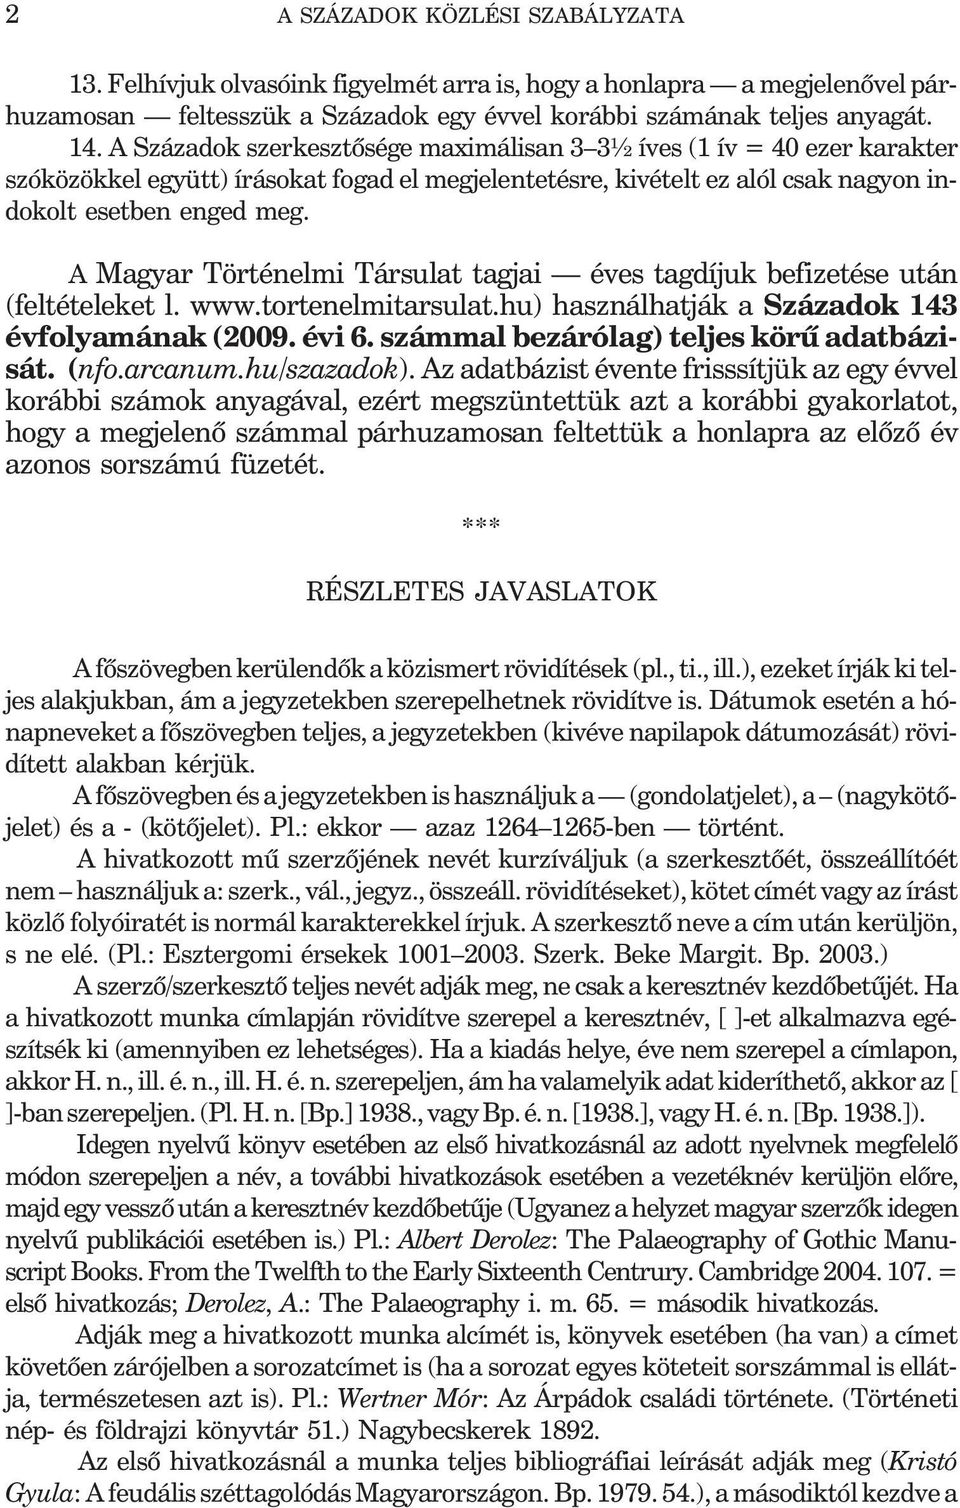 A Magyar Történelmi Társulat tagjai éves tagdíjuk befizetése után (feltételeket l. www.tortenelmitarsulat.hu) használhatják a Századok 143 évfolyamának (2009. évi 6.